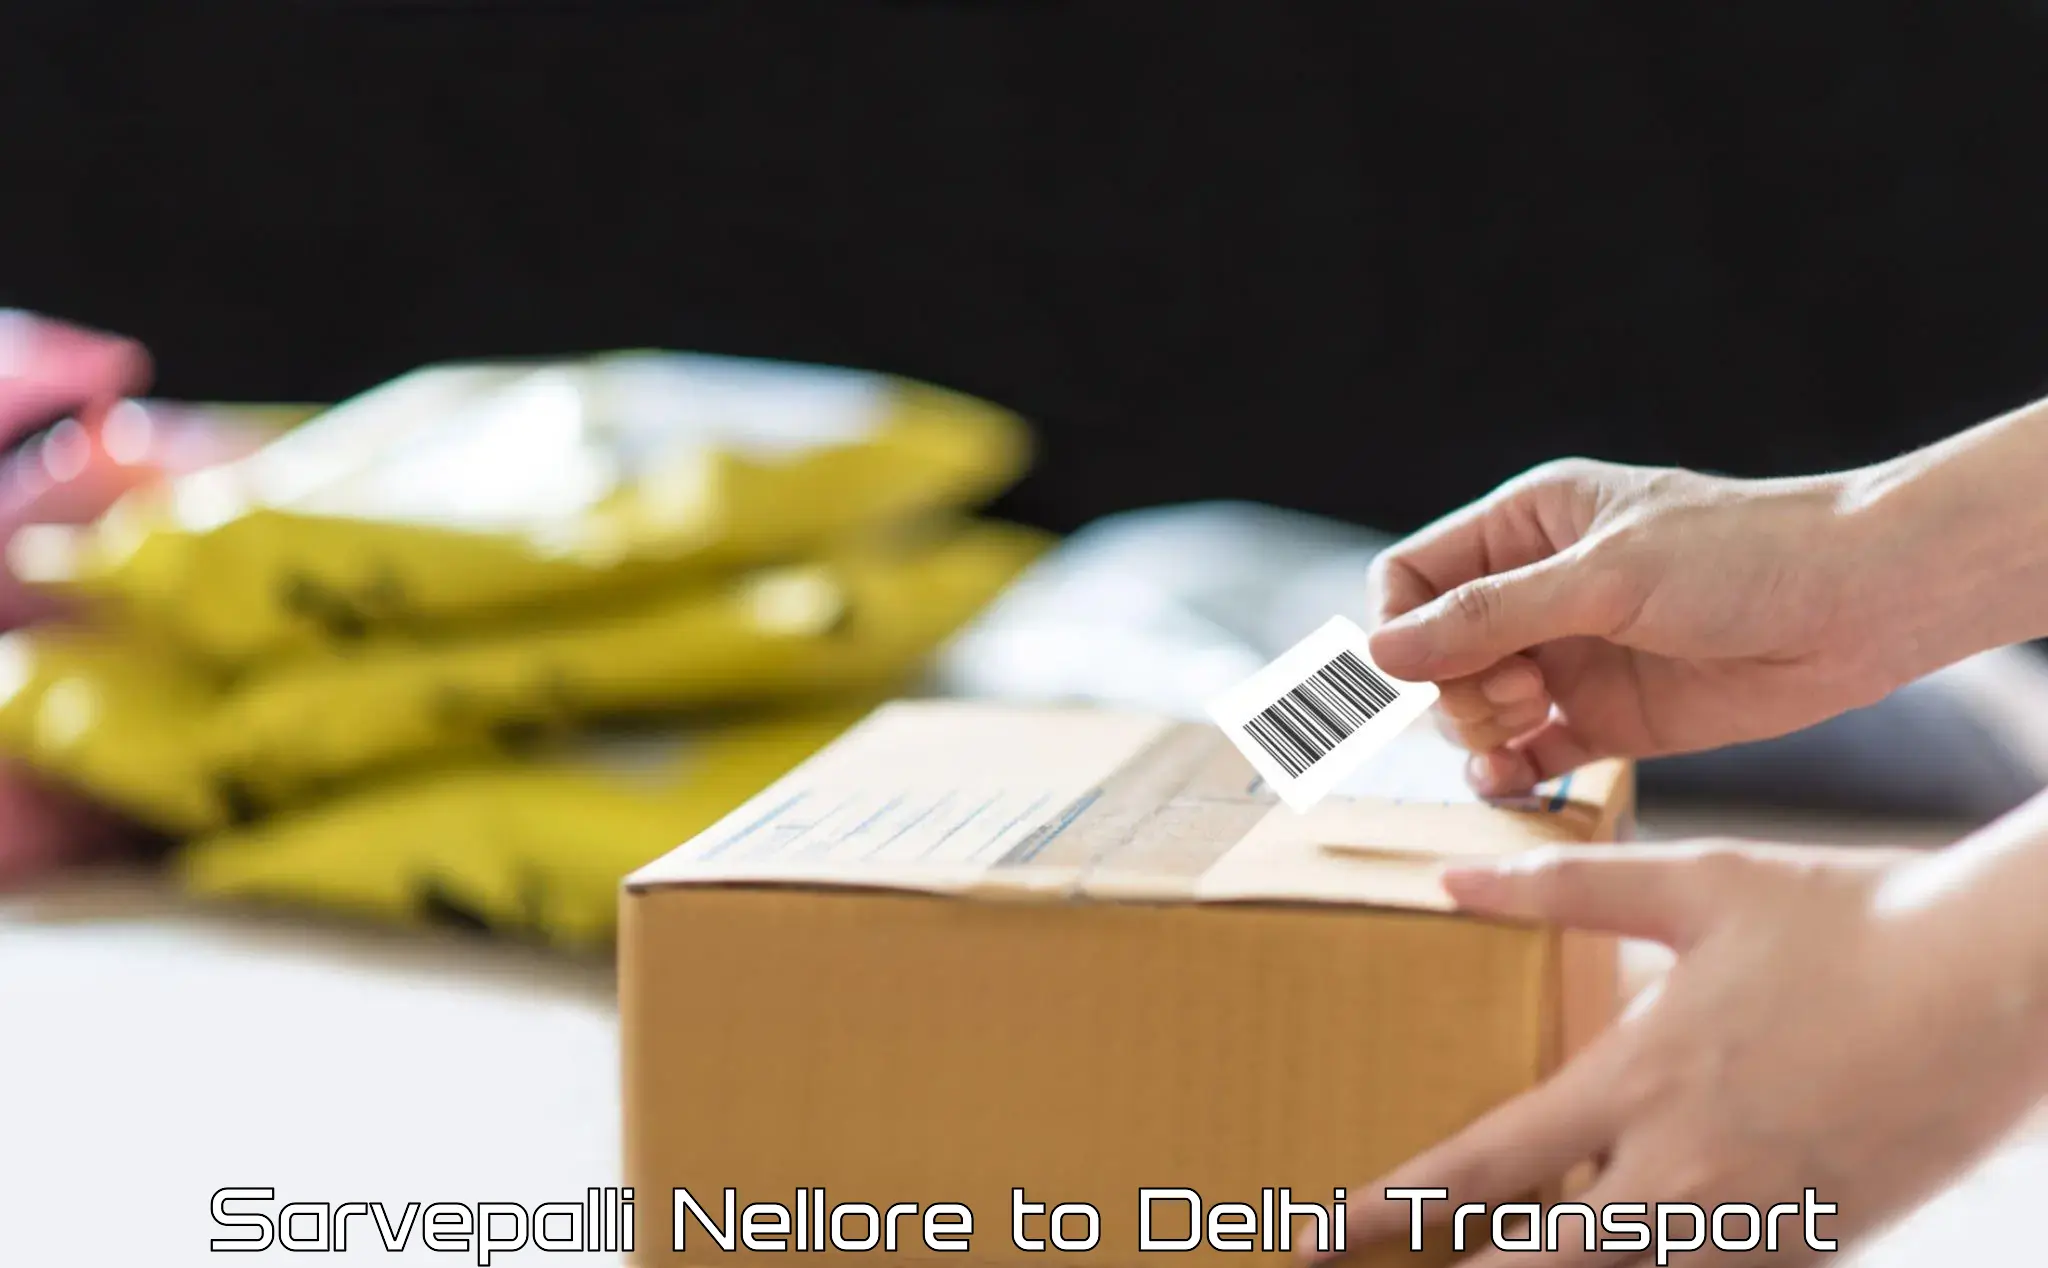 Commercial transport service Sarvepalli Nellore to IIT Delhi